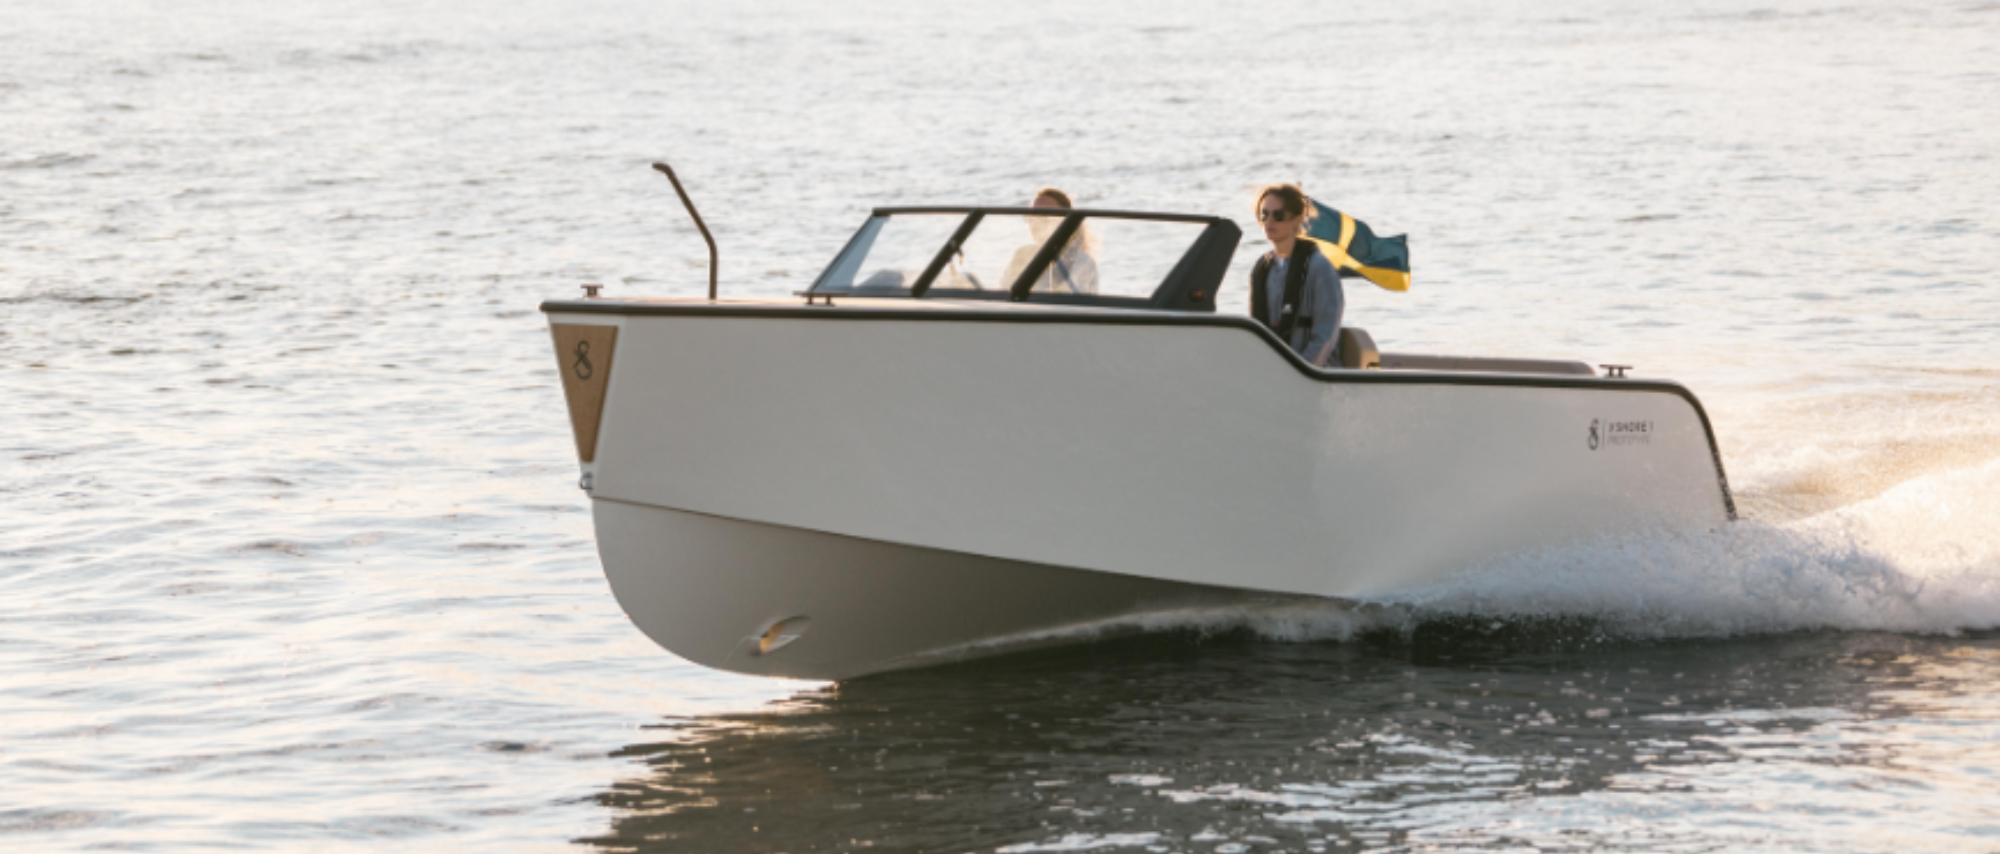 x-shore båt swishar på vattnet med 2 personer i. Svenskflagga svajar i vinden